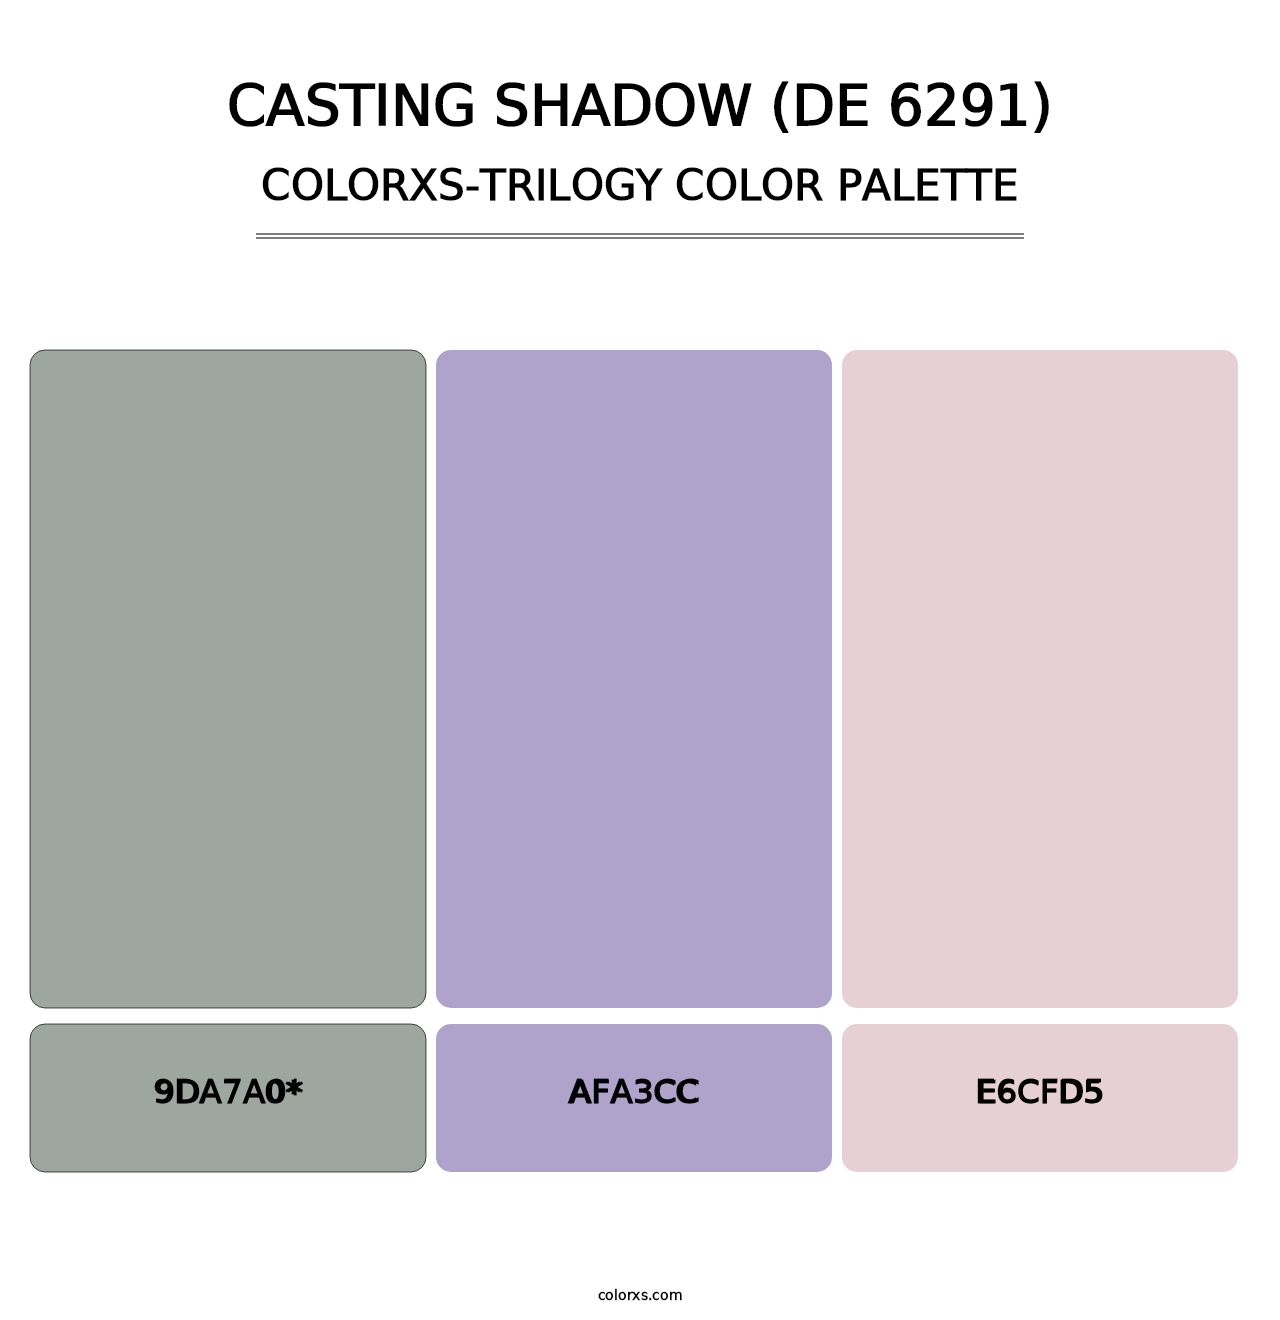 Casting Shadow (DE 6291) - Colorxs Trilogy Palette